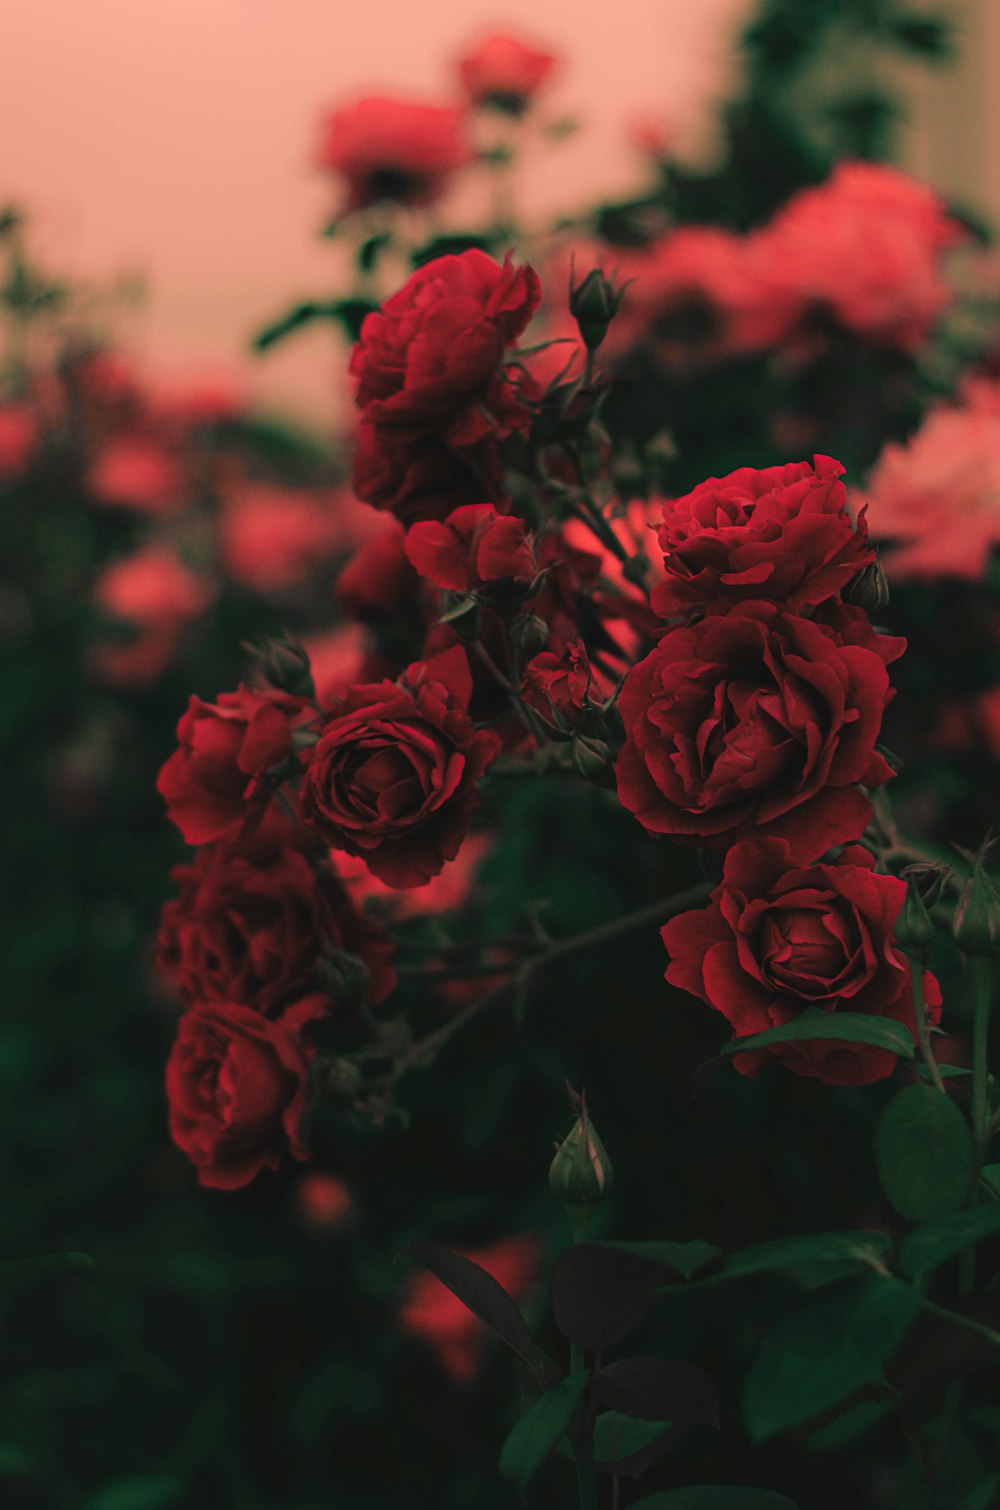 Fotografia de foco raso de rosas vermelhas